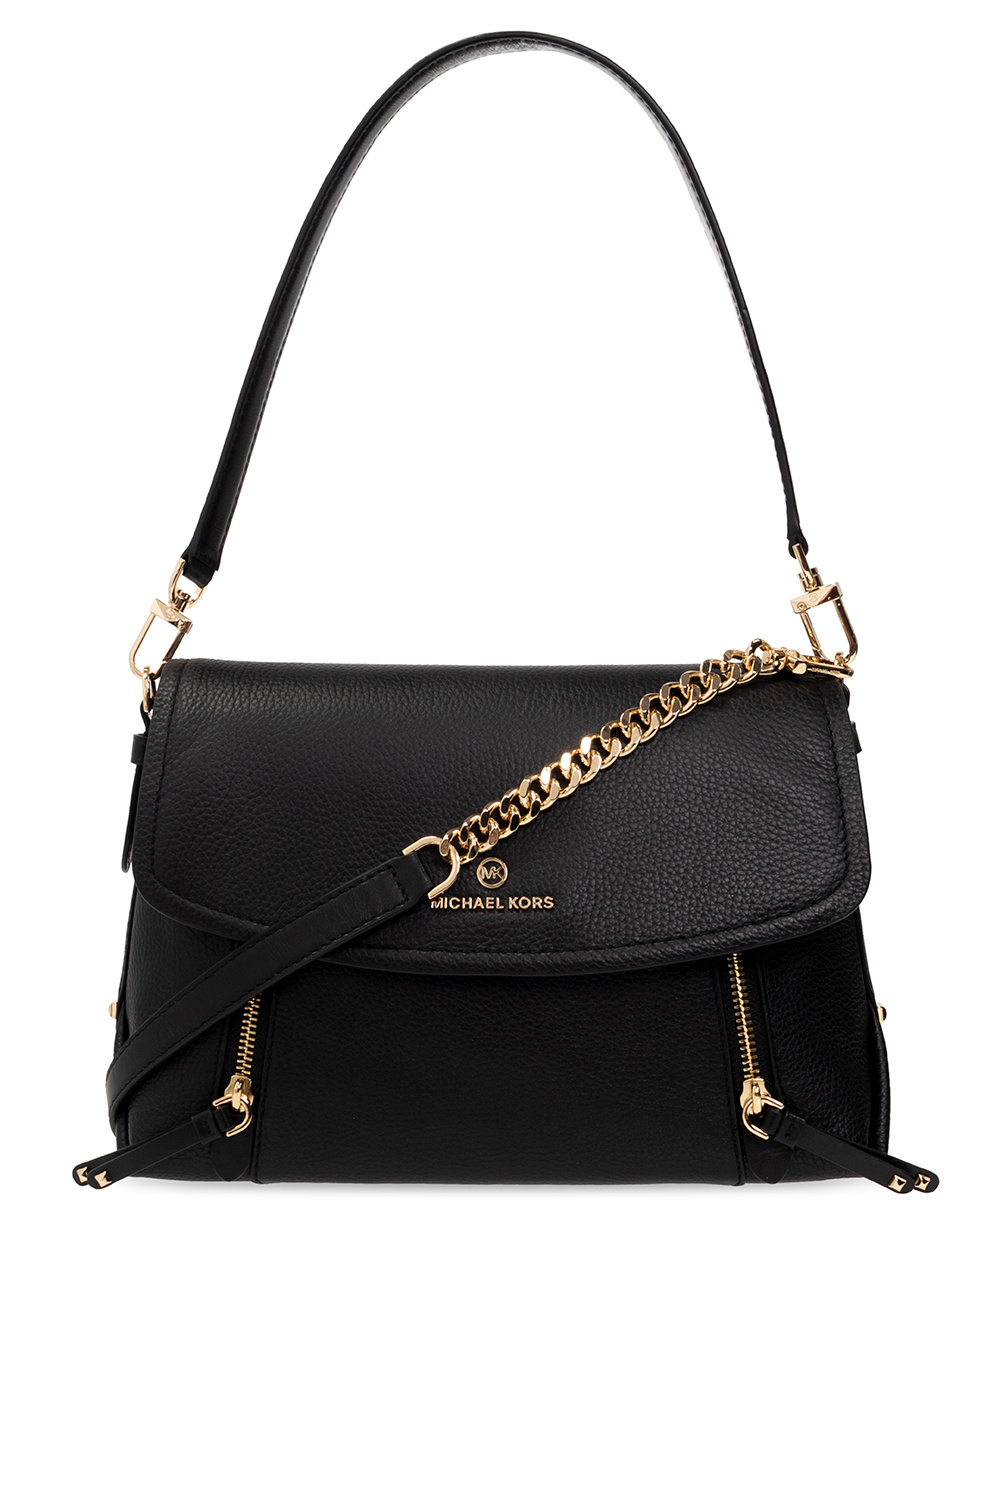 Michael Kors Handbag Brooklyn Medium Convertible Flap Black (001)